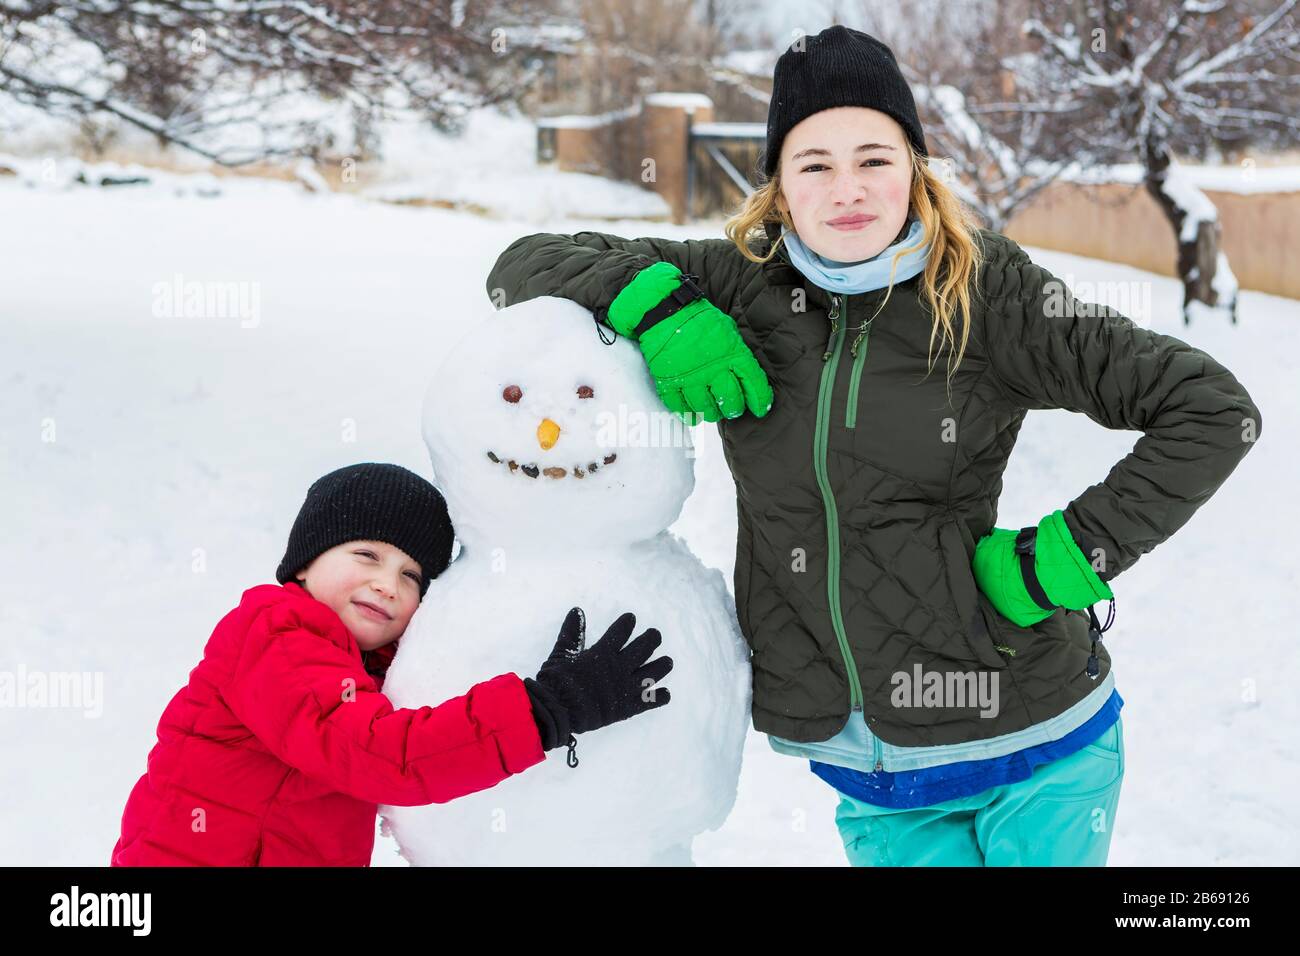 Bruder und Schwester, ein kleiner Junge und Mädchen im Teenager-Alter, die sich im Winter an Schneemann lehnen Stockfoto